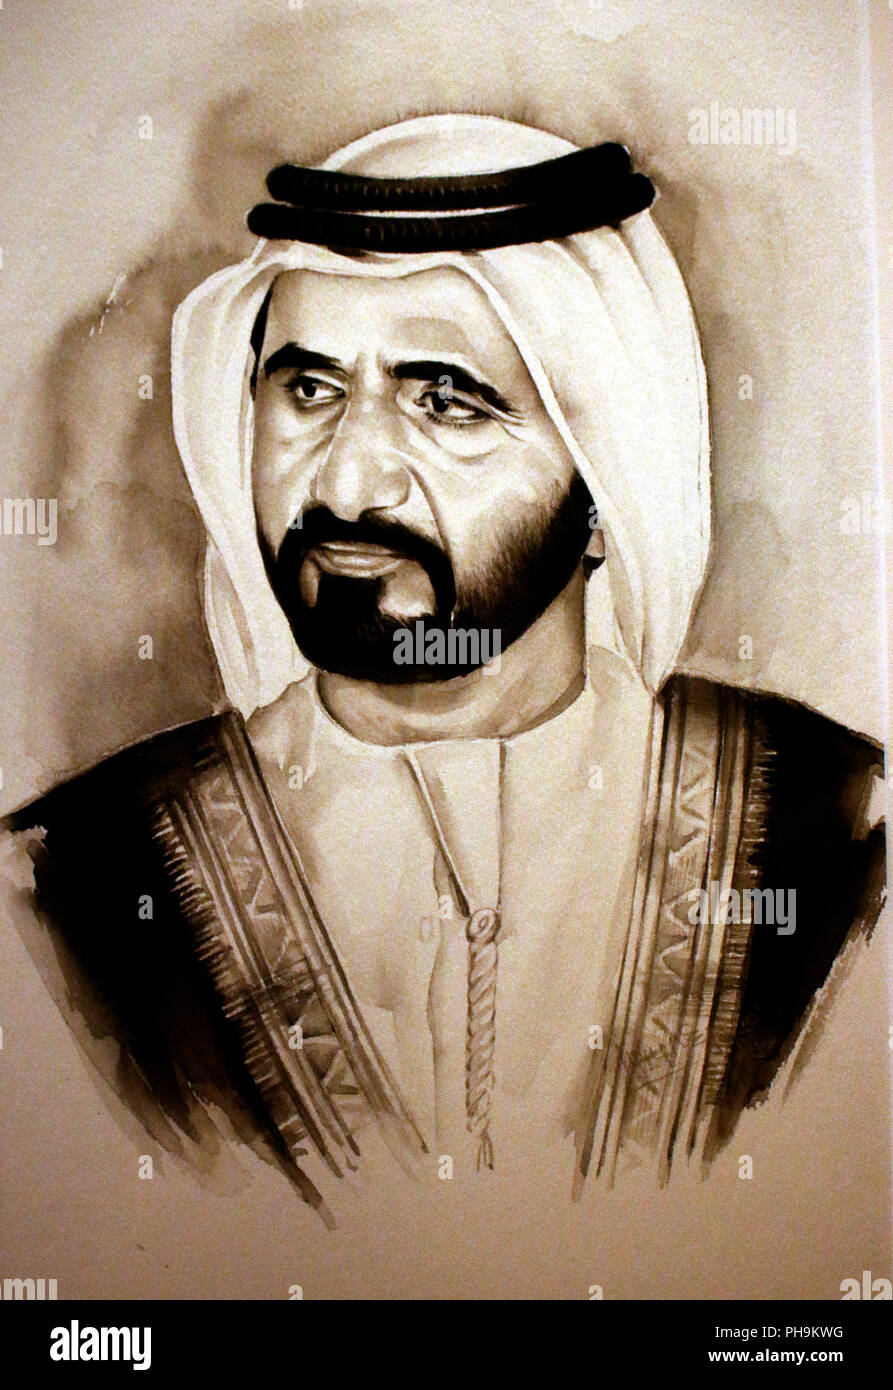 Portrait von Sheikh Mohammed bin Rashid al Maktoun, Dubai. Stock Photo